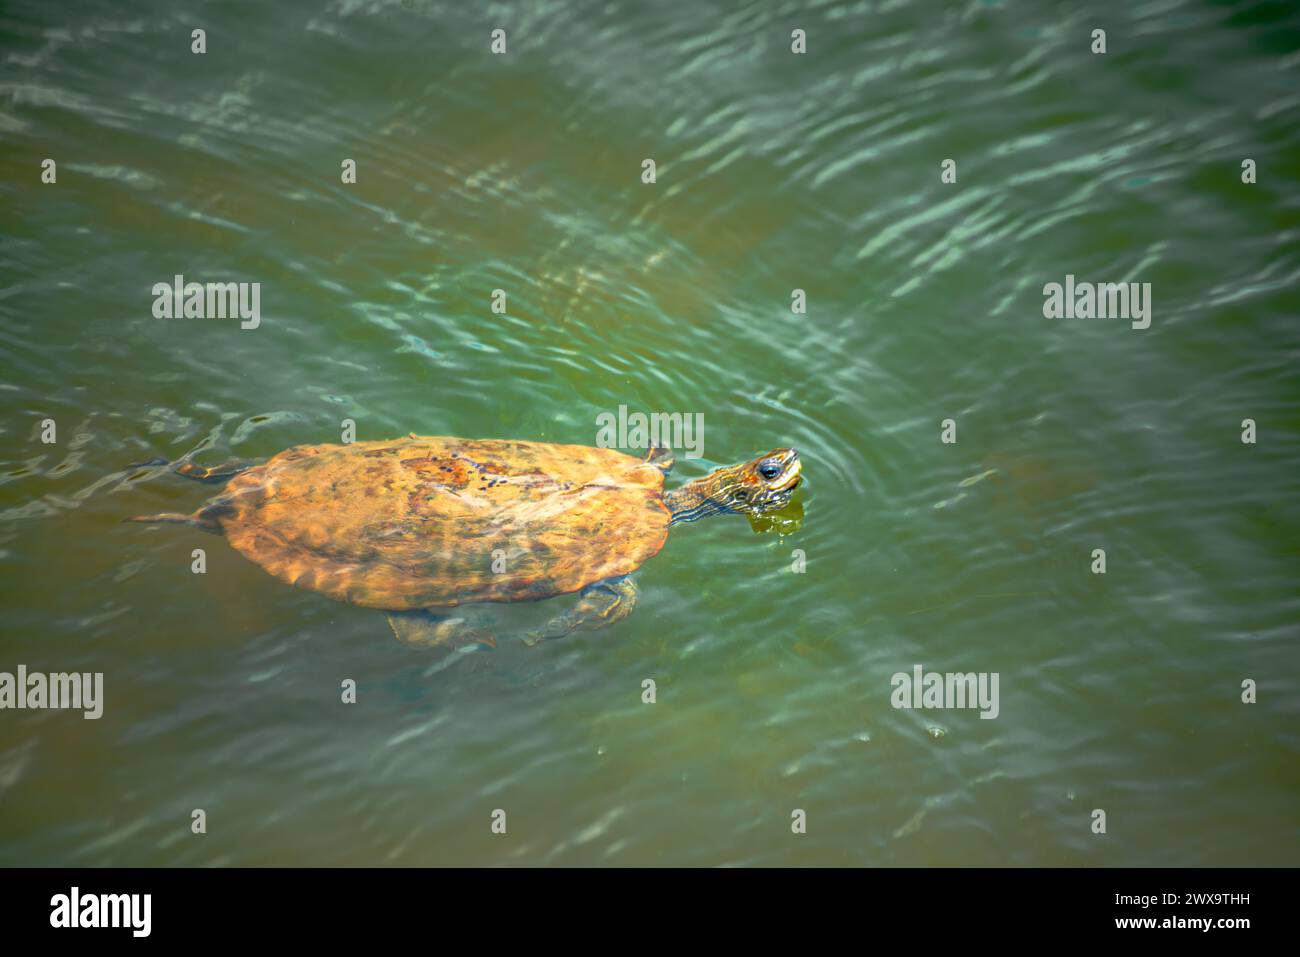 Un momento grazioso si dispiega mentre una tartaruga rivuleto Mauremys scivola pacificamente attraverso acque calme, mostrando la bellezza della vita acquatica. Foto Stock